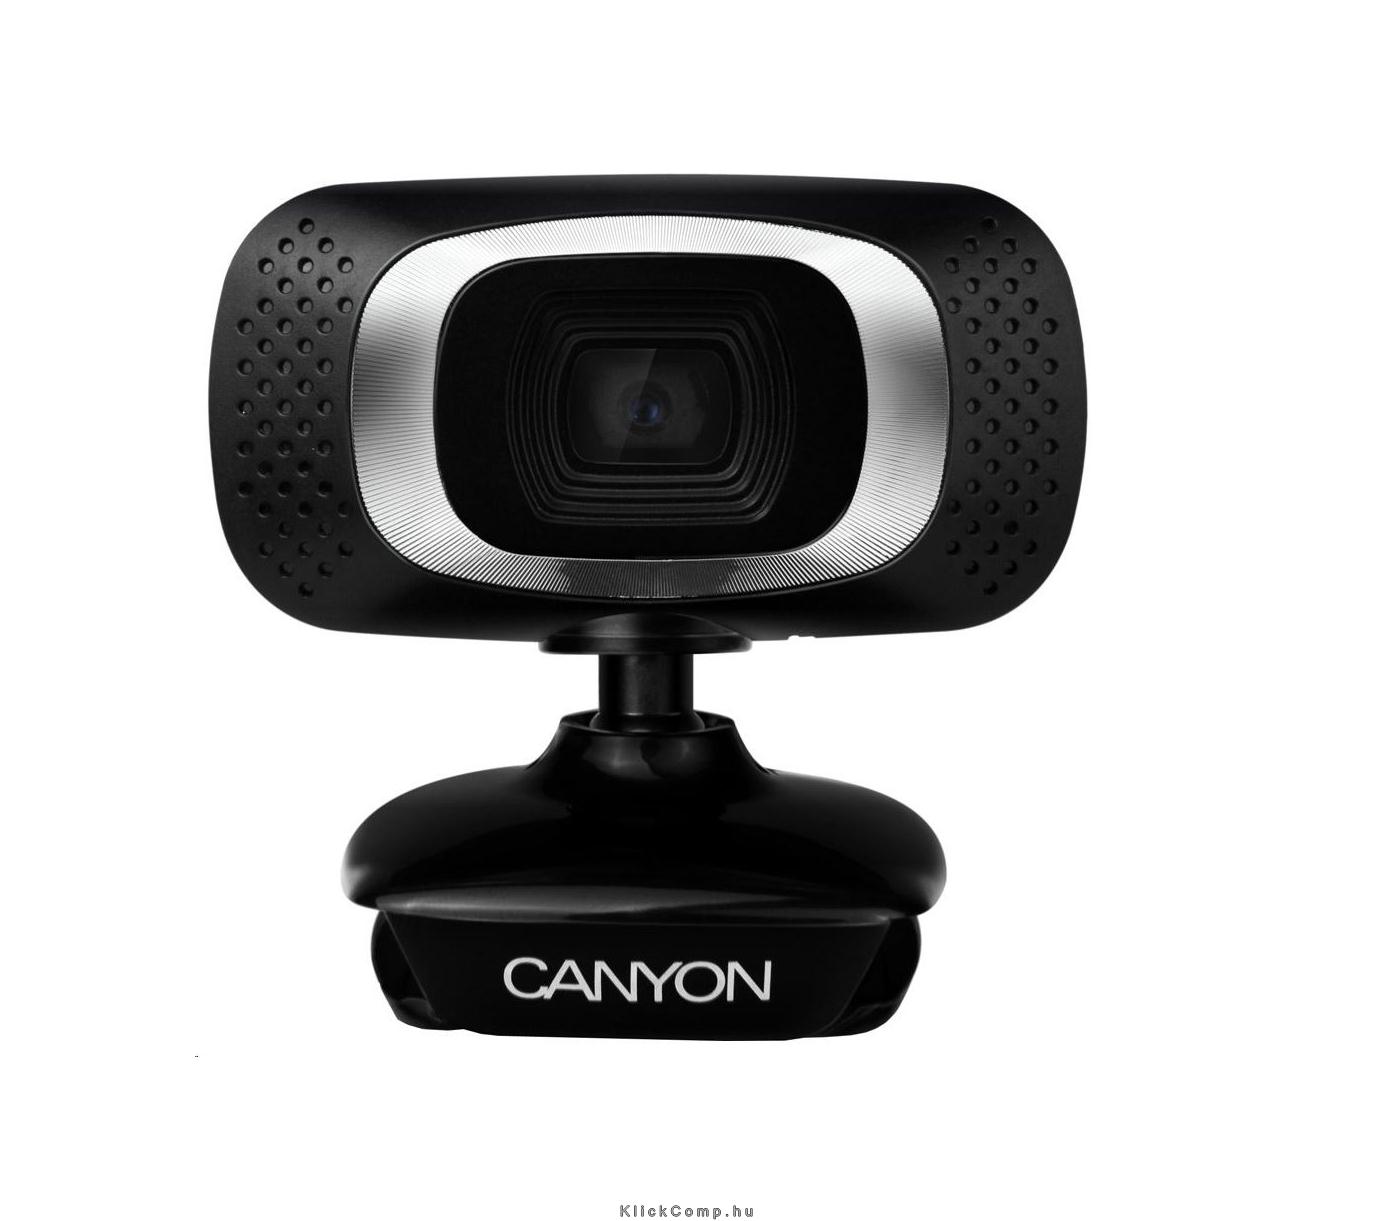 1080P Full HD webcam with USB2.0. connector, 360° rotary view scope, 2.0Mega pi fotó, illusztráció : CNE-CWC3